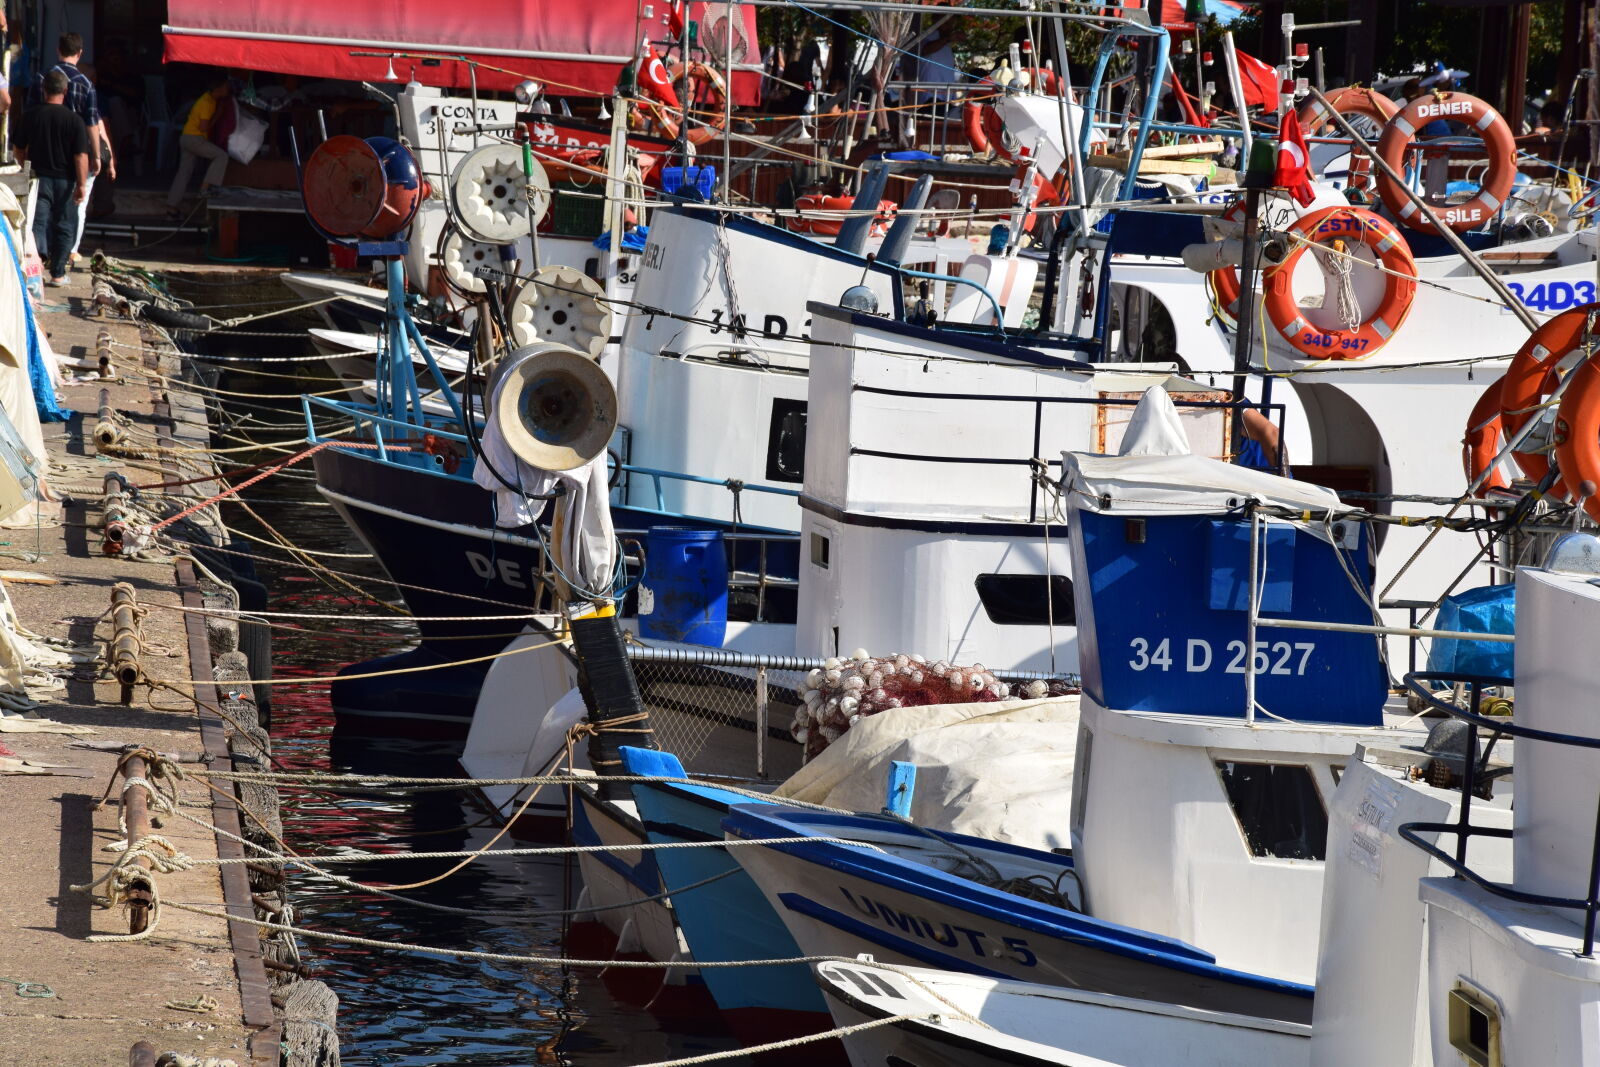 Nikon D5300 + Nikon AF-S DX Nikkor 18-105mm F3.5-5.6G ED VR sample photo. Boat, coast, fishing, boat photography